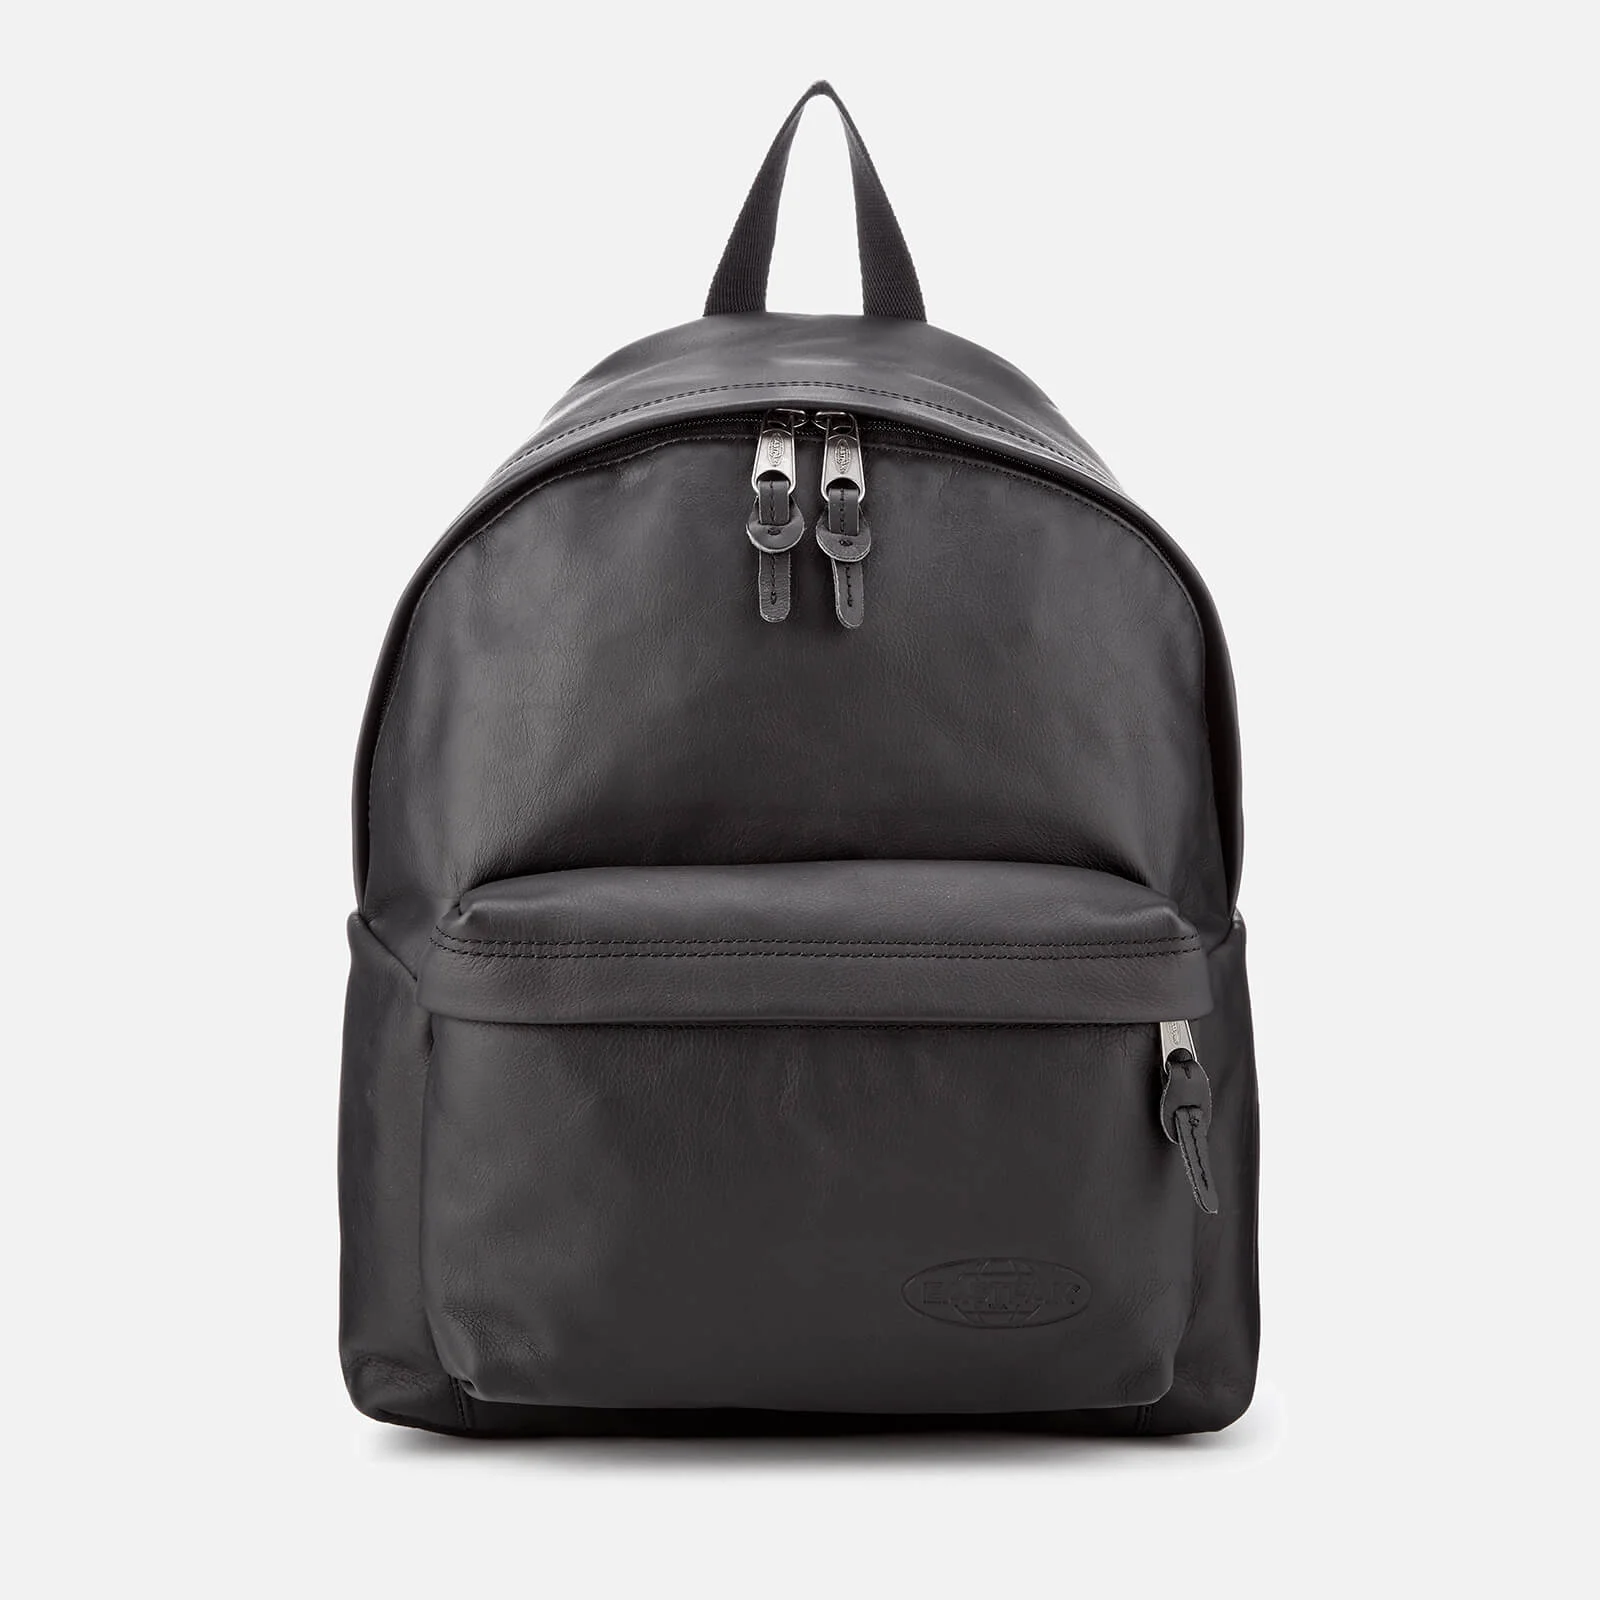 Eastpak Men's Leather Padded Pak'r Backpack - Black Image 1